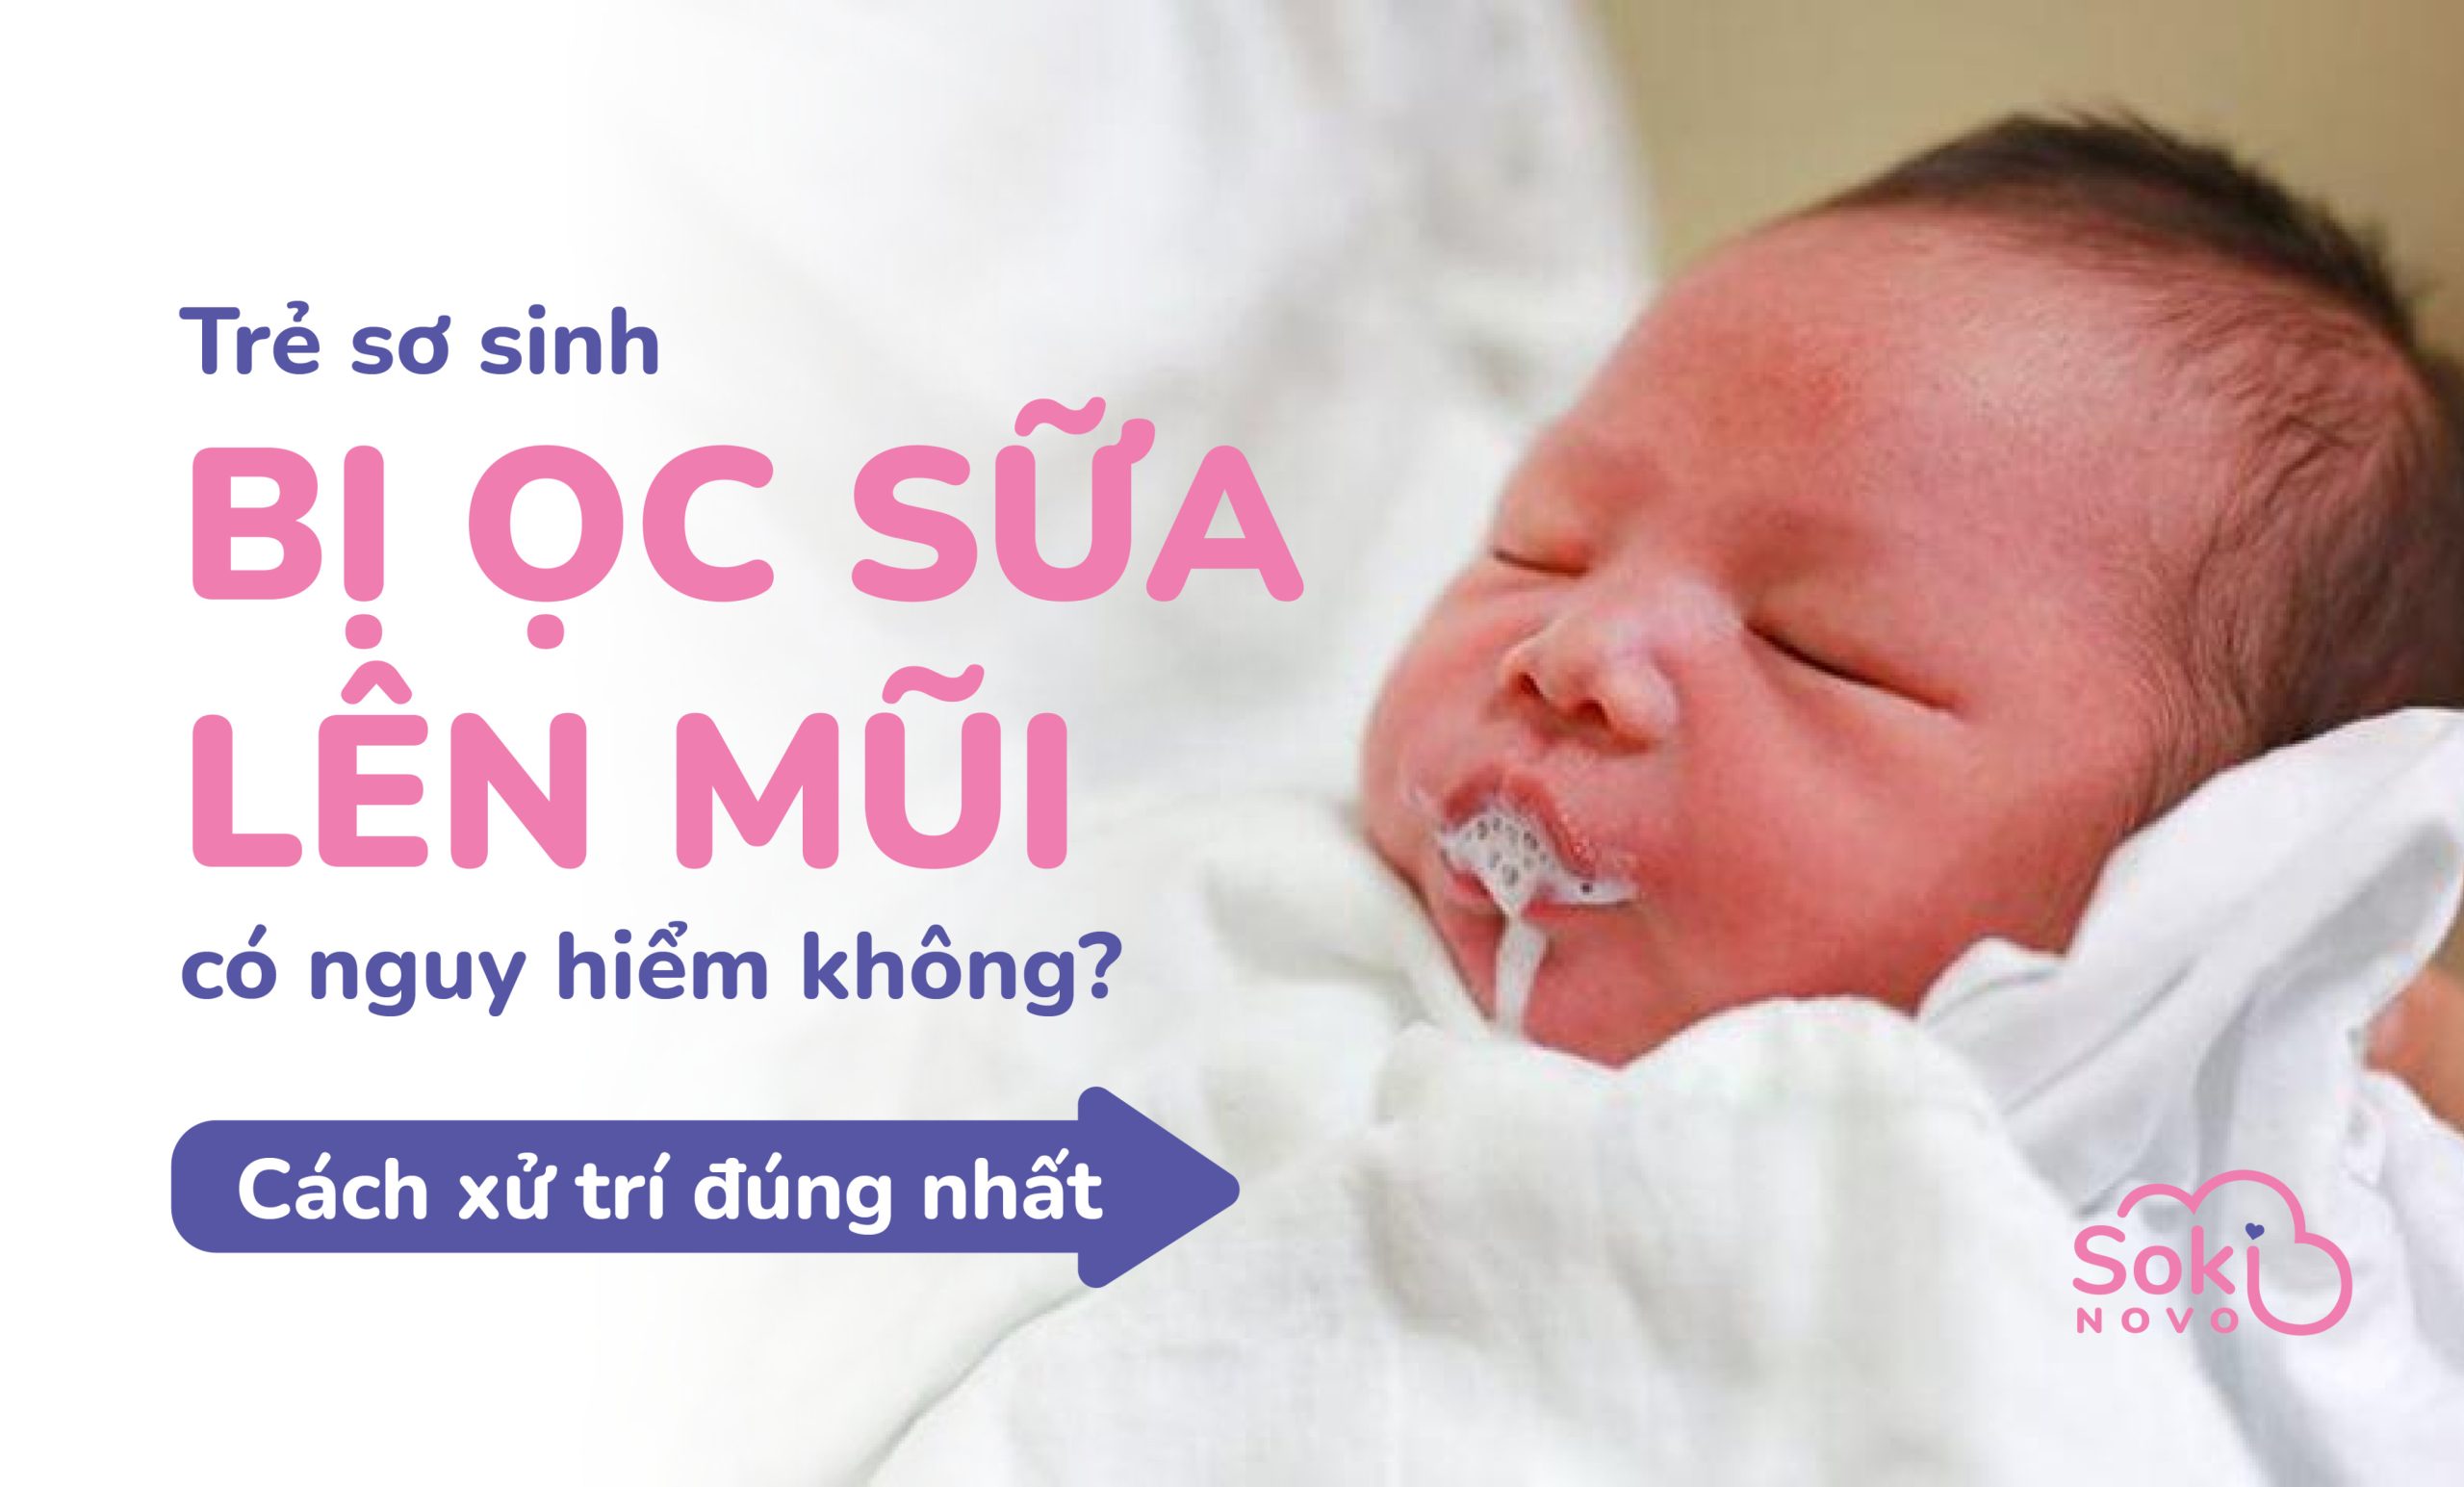 Trẻ sơ sinh bị ọc sữa lên mũi có nguy hiểm không? Cách xử lý triệt để